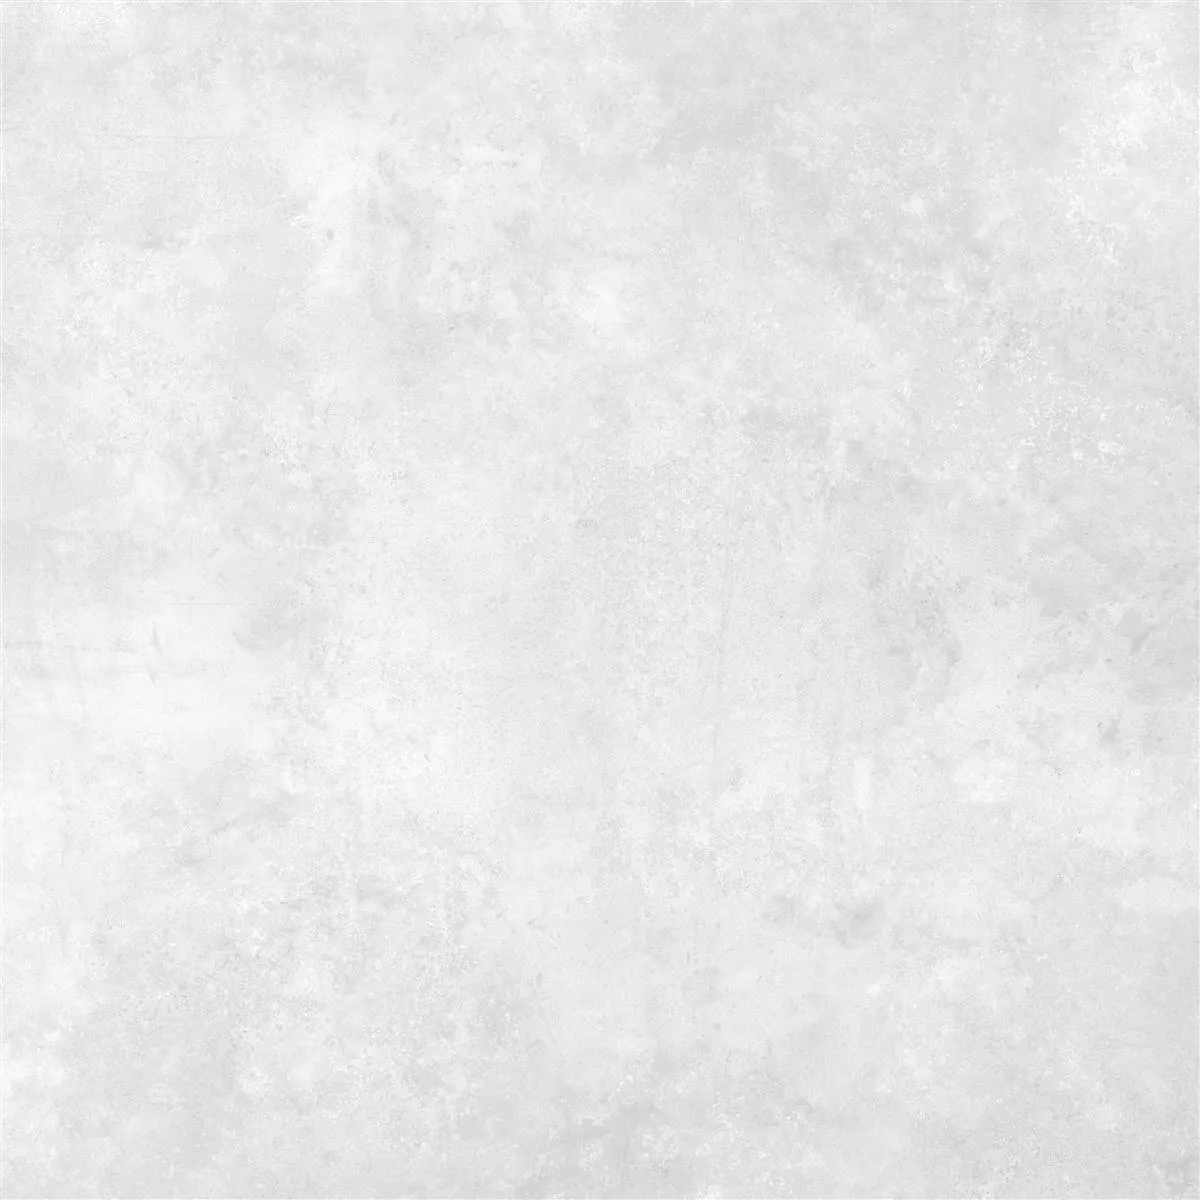 Πλακάκι Δαπέδου Illusion Μεταλλική Εμφάνιση Lappato Ασπρο 60x60cm